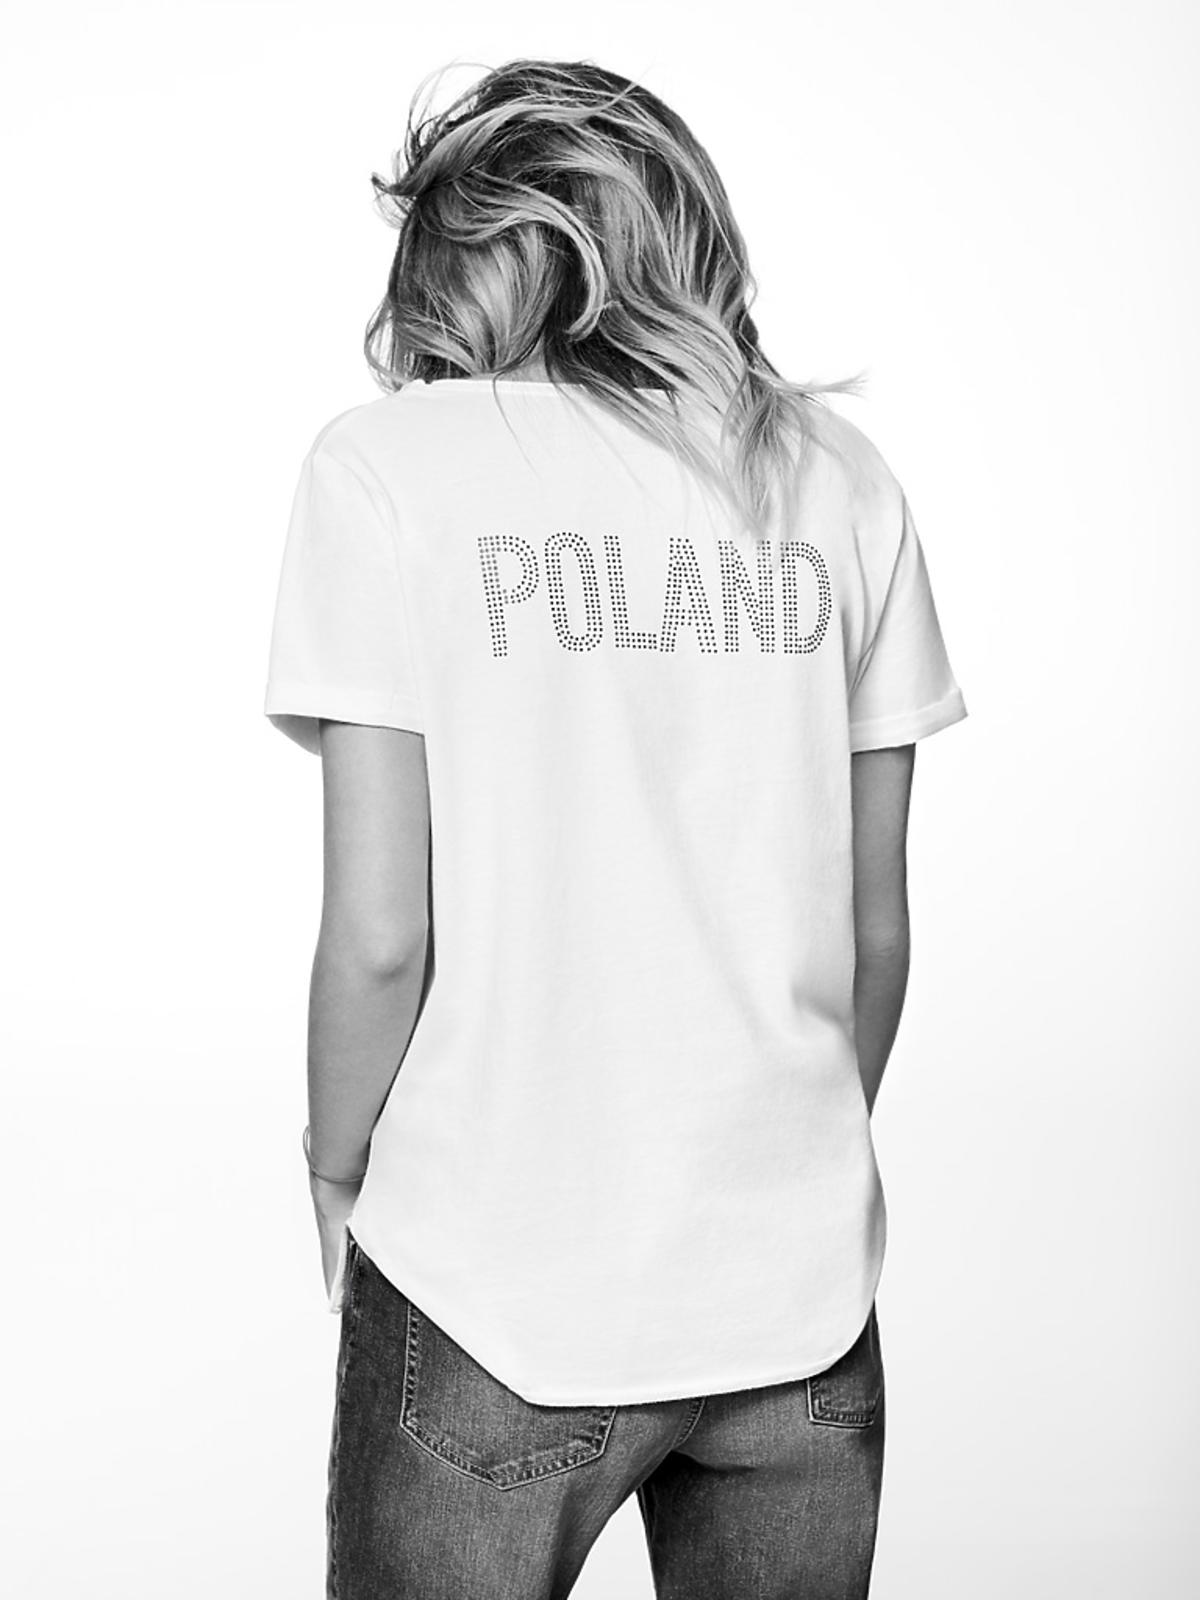 Dominika Grosicka kolekcja Mistrzowska Pomoc - koszulka z napisem Poland